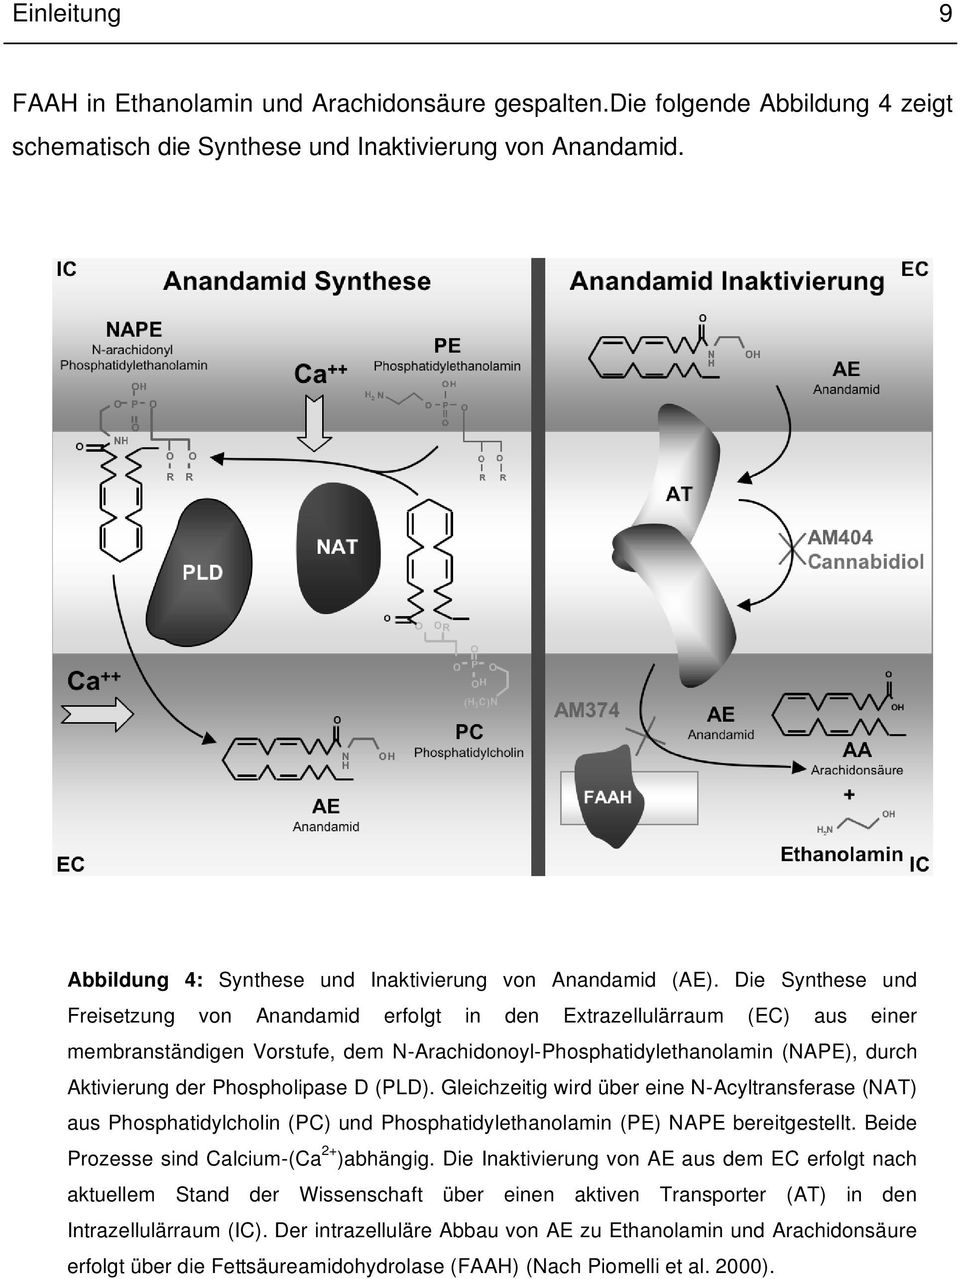 Die Synthese und Freisetzung von Anandamid erfolgt in den Extrazellulärraum (EC) aus einer membranständigen Vorstufe, dem N-Arachidonoyl-Phosphatidylethanolamin (NAPE), durch Aktivierung der